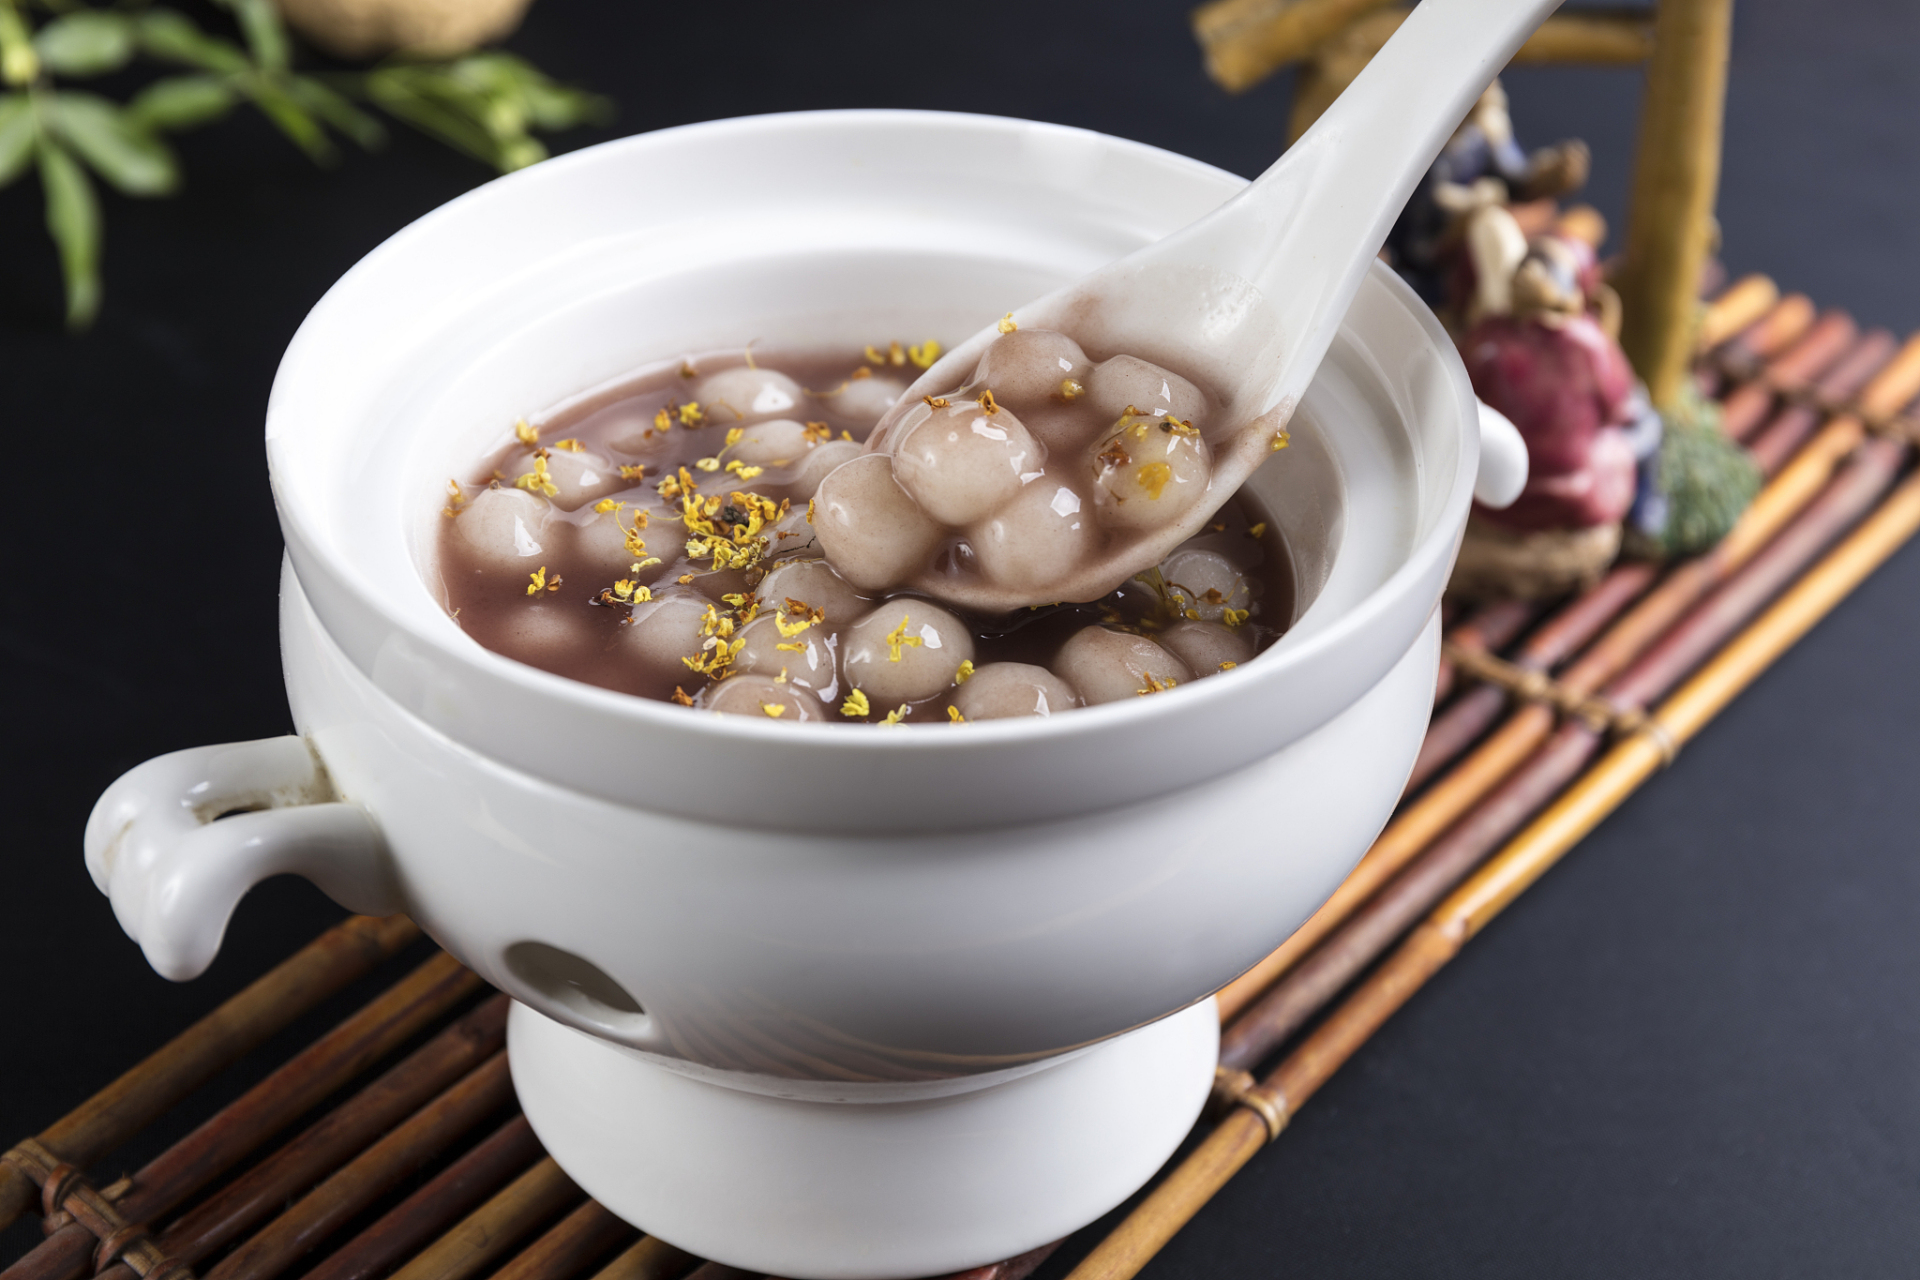 4,藕粉圆子 藕粉圆子,是传统特色美食,已有200多年的历史